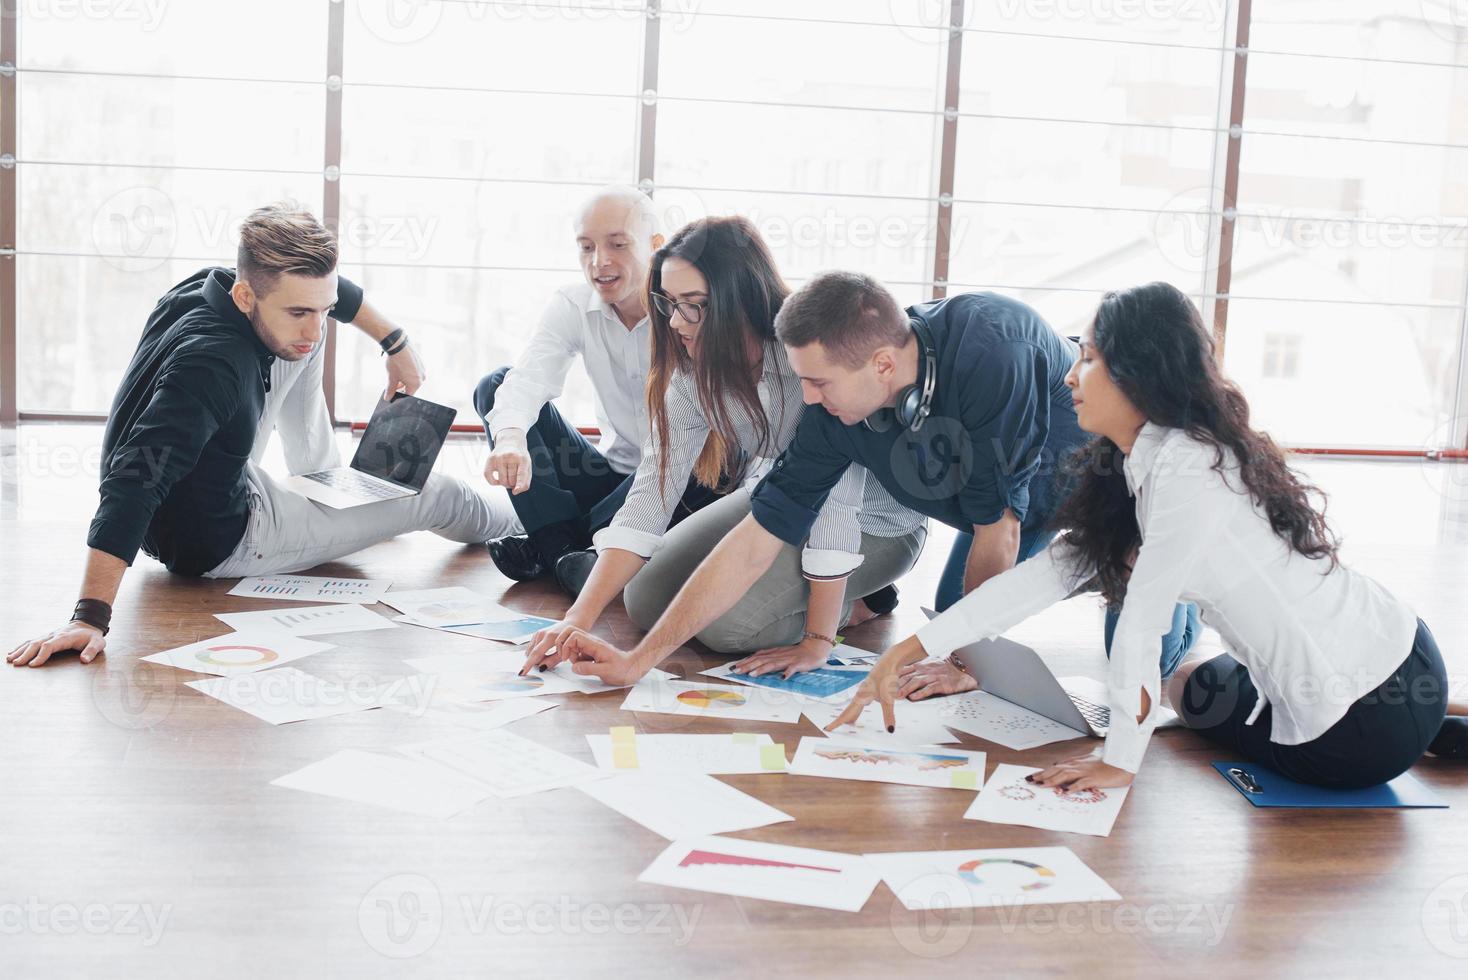 Planungsstrategie zusammen. Geschäftsteam, das sich Papiere auf dem Boden ansieht, wobei der Manager auf eine Idee hinweist. Zusammenarbeit Unternehmenserfolg. Planung Design zeichnen. Teamwork-Konzept foto